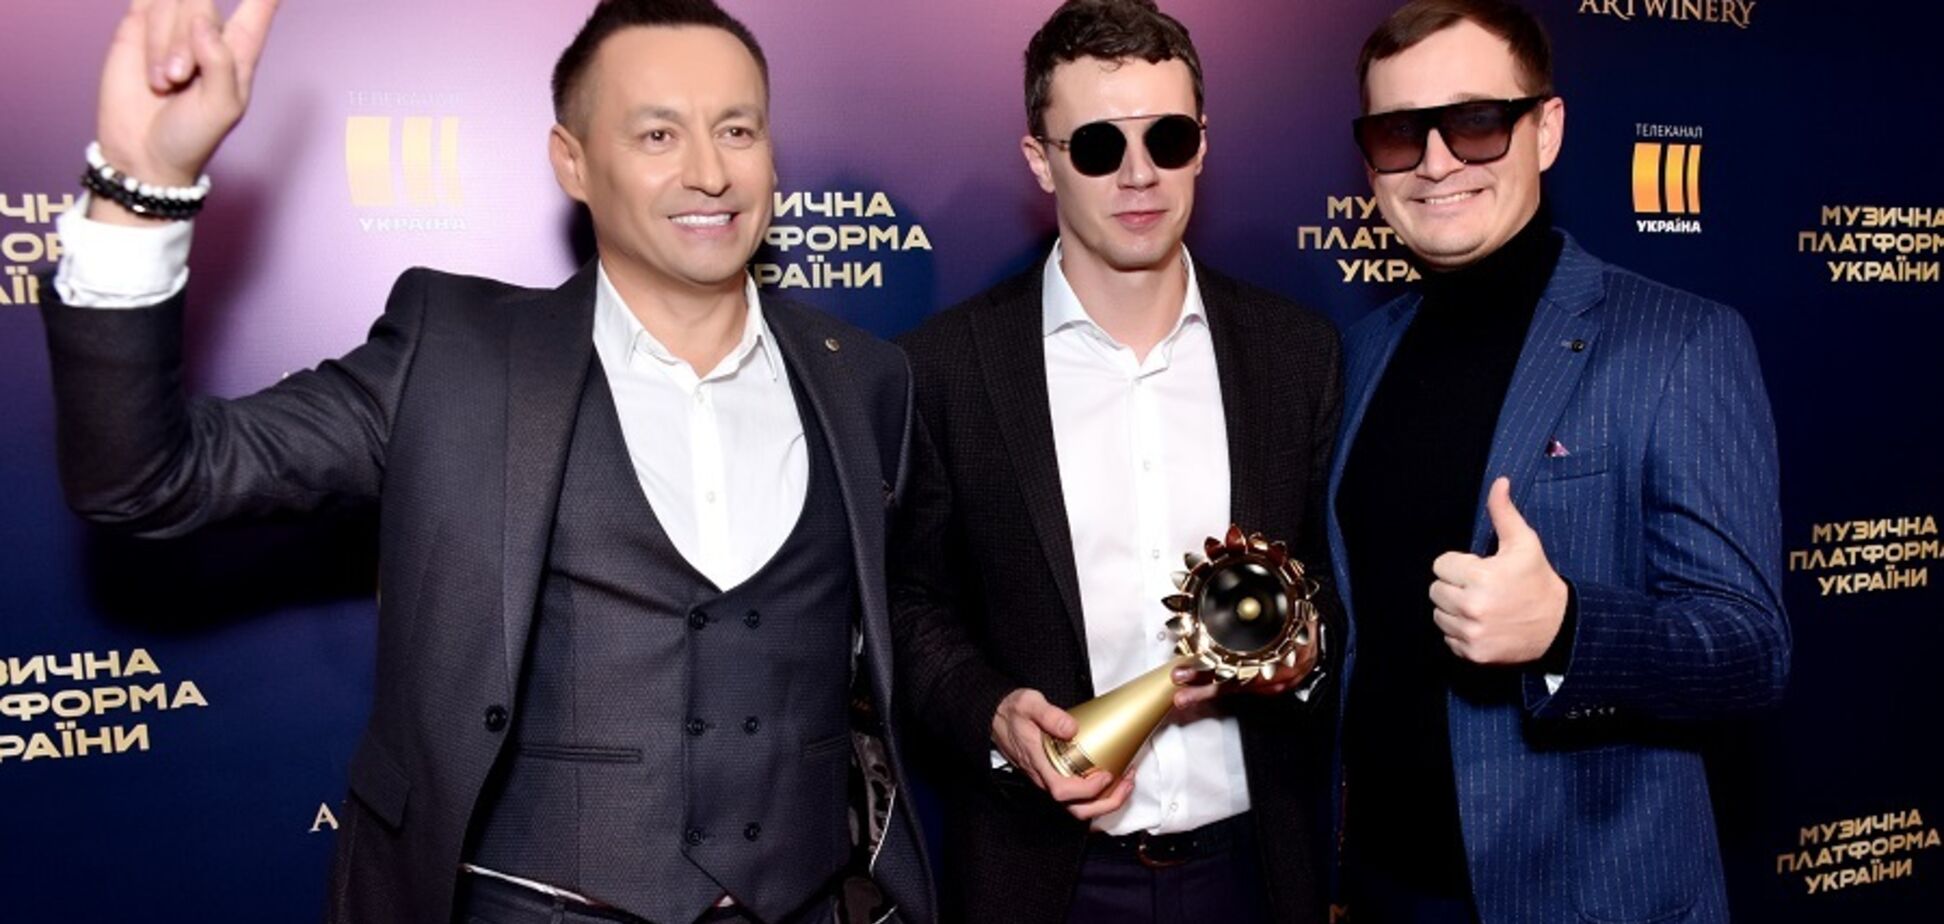 Gena Viter стал победителем в двух номинациях на премии 'Музыкальная платформа'